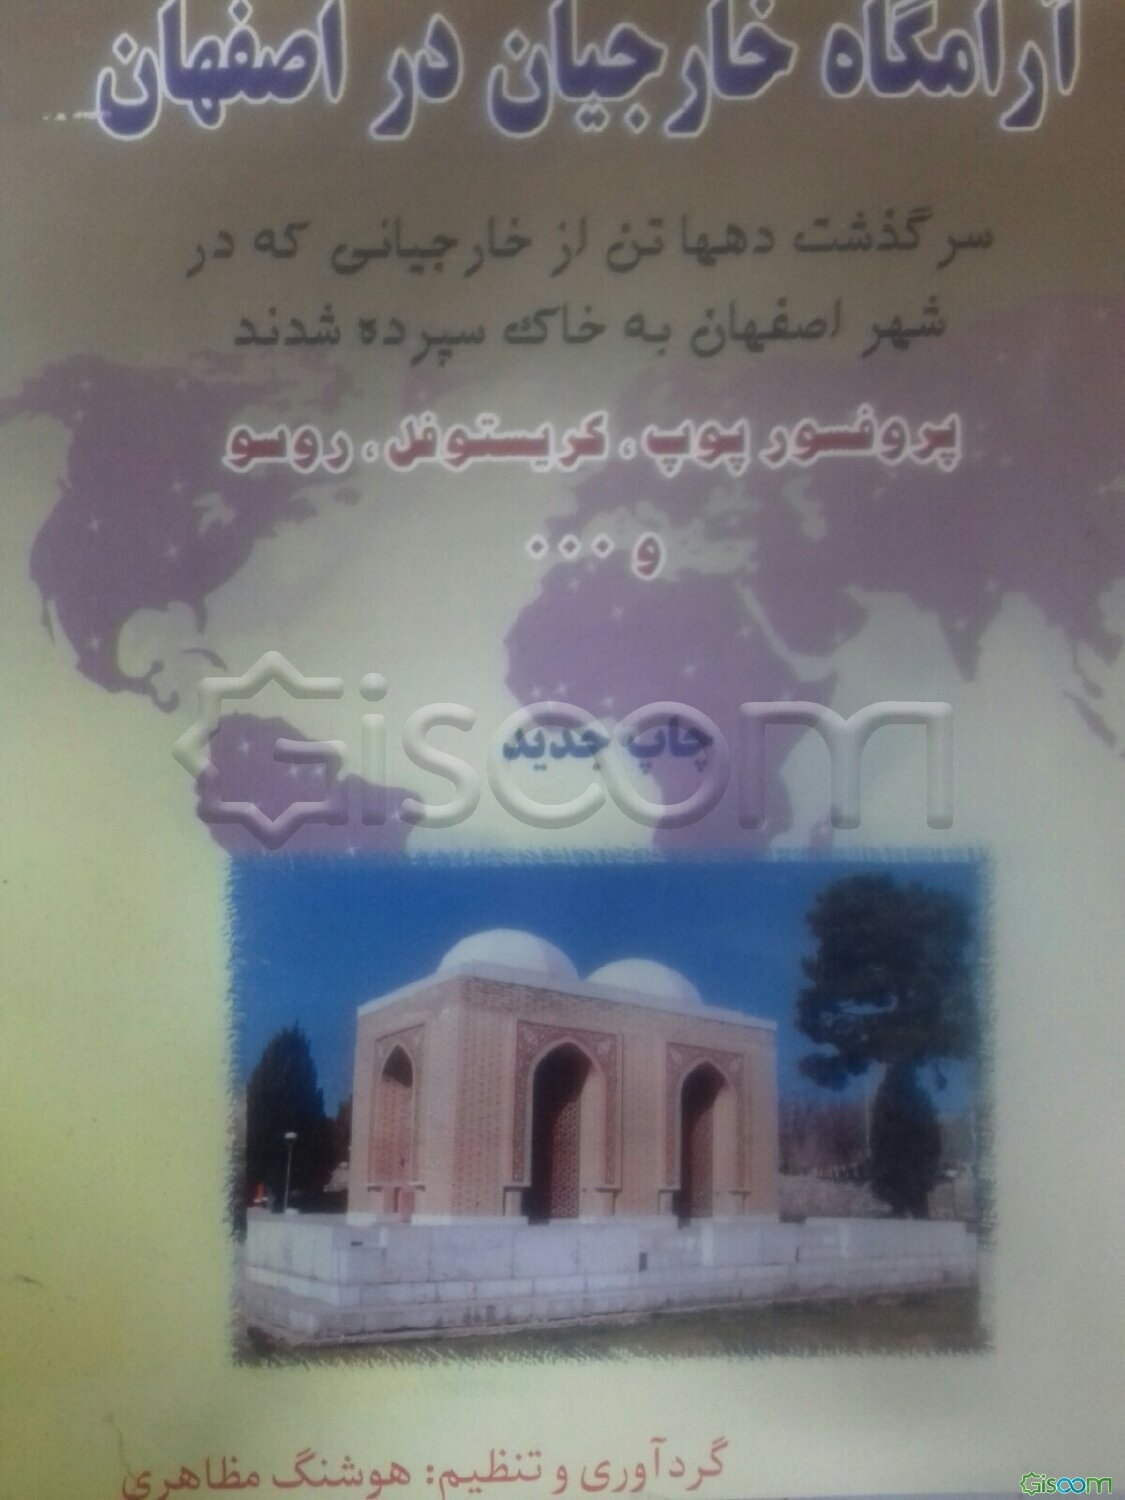 آرامگاه خارجیان در اصفهان: سرگذشت دهها تن از خارجیانی که در شهر اصفهان به خاک سپرده شدند